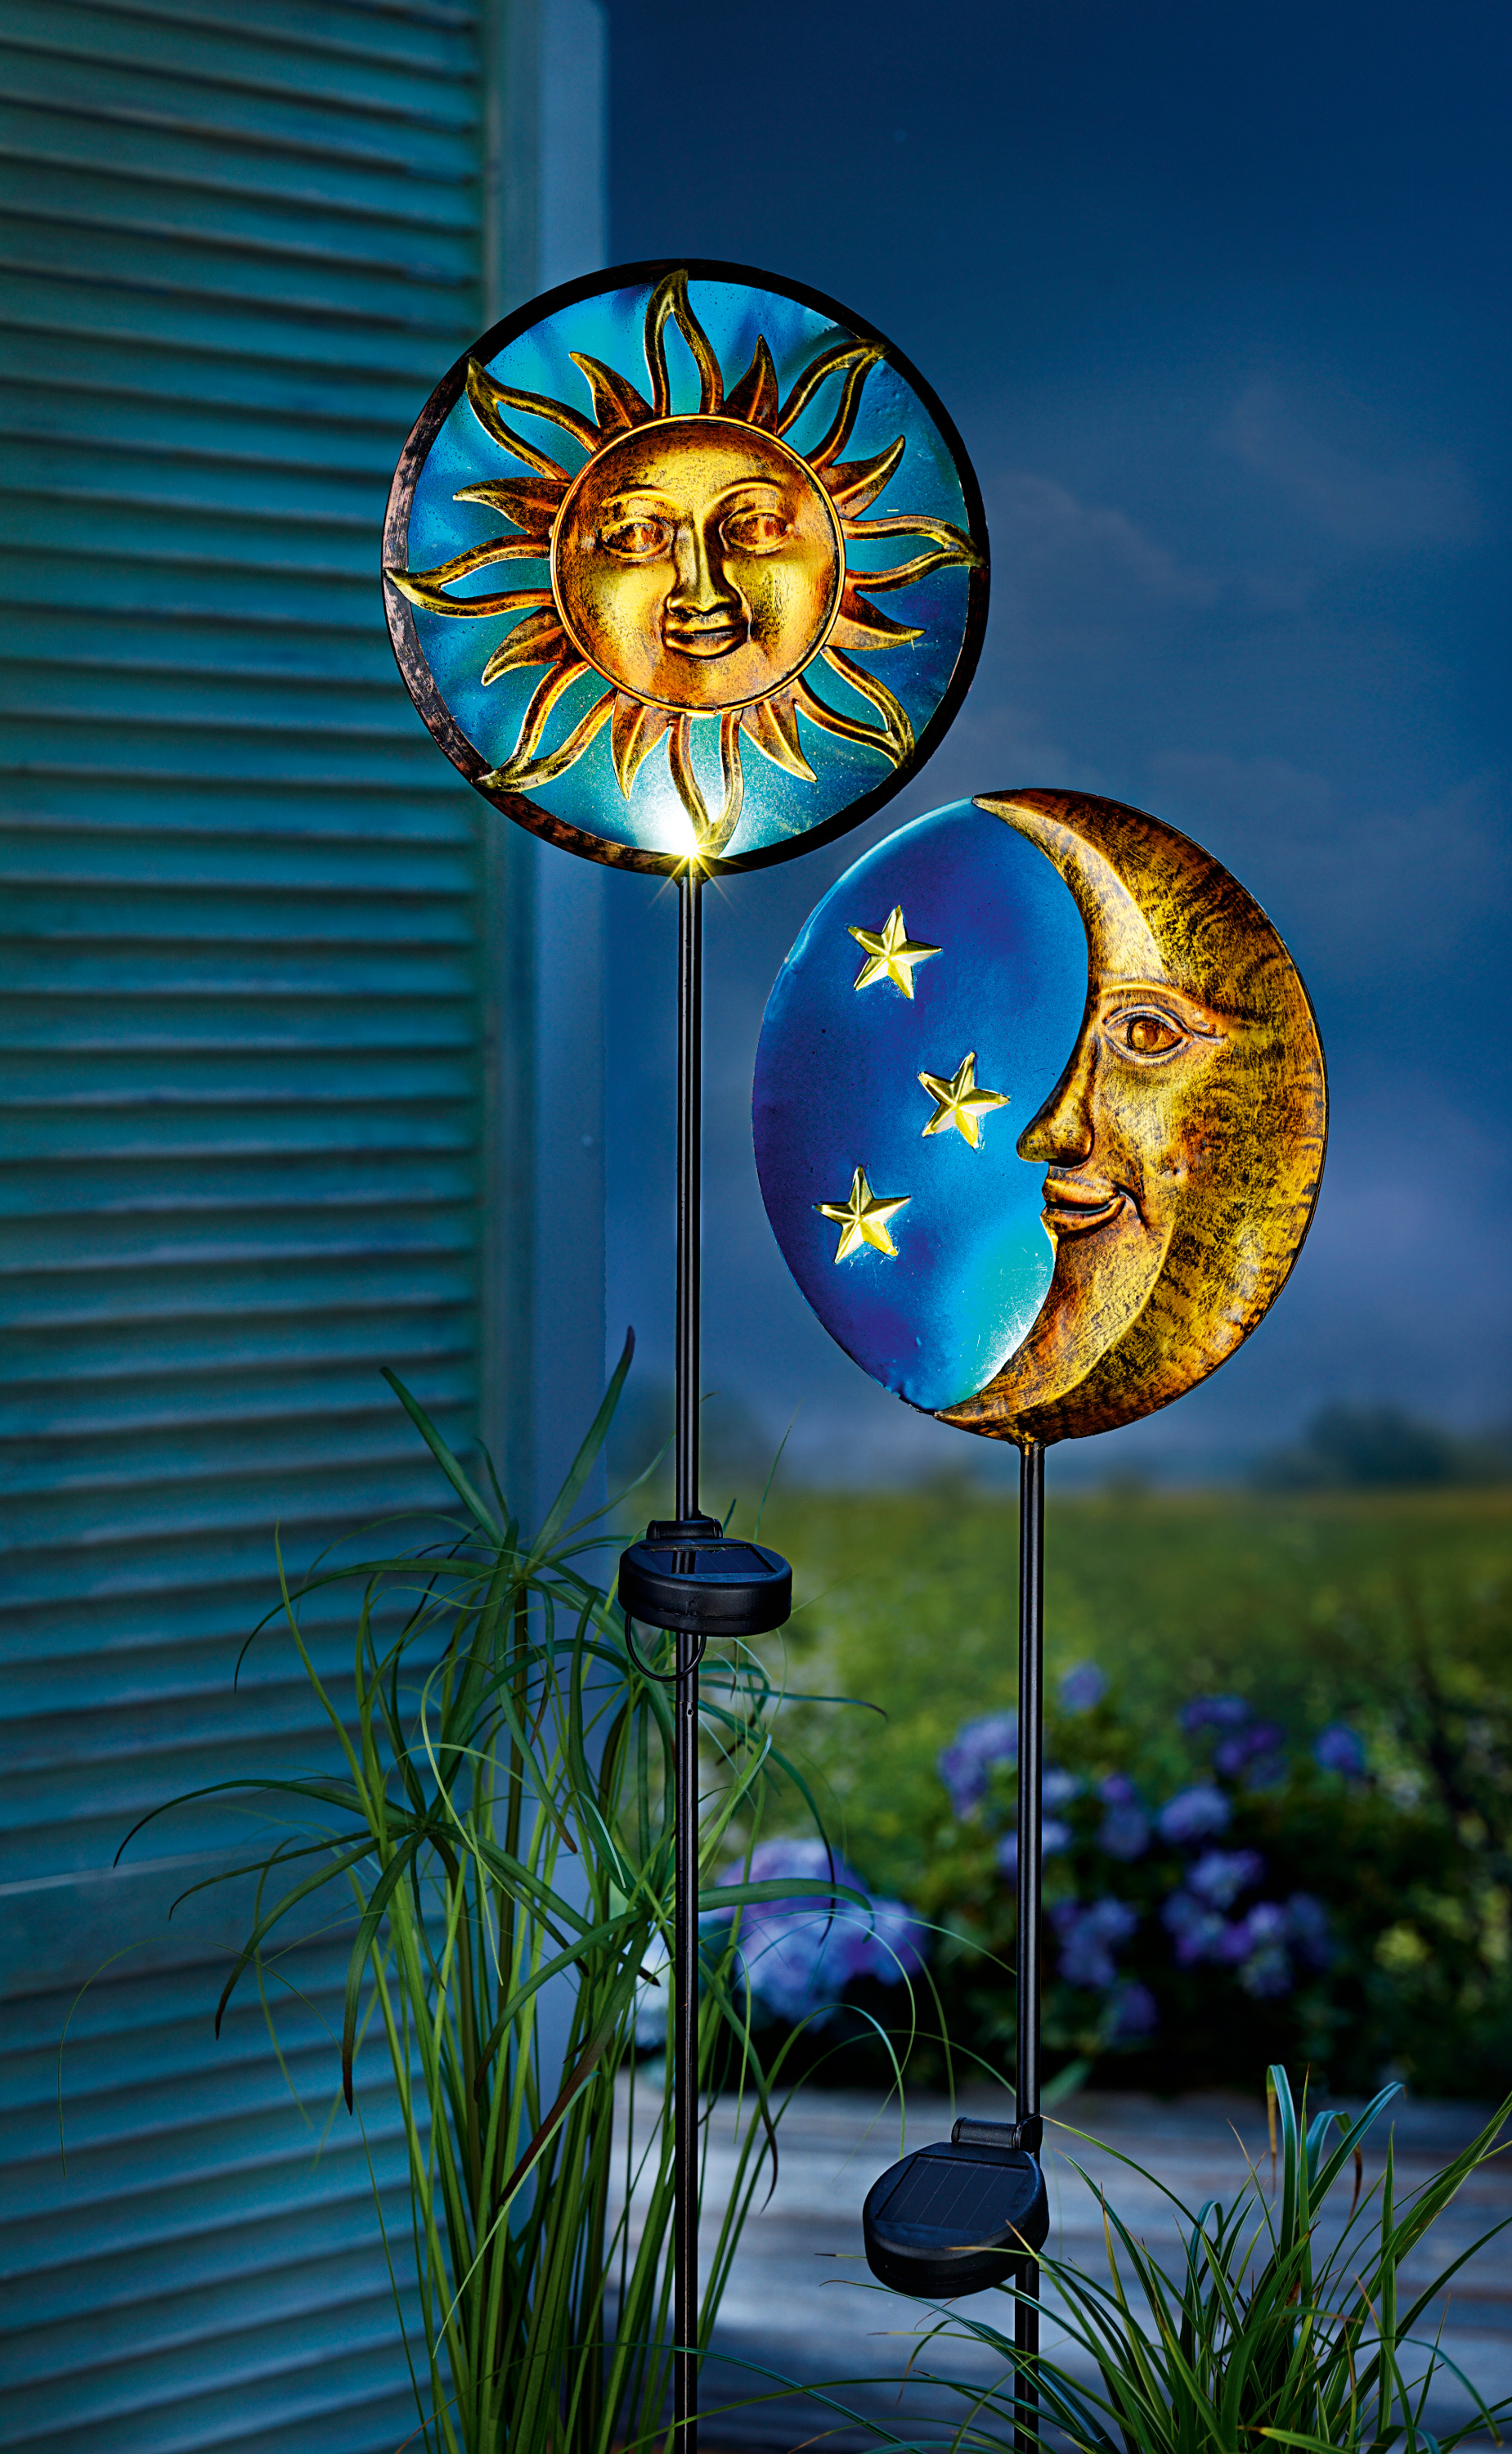 Solar Gartenstecker "Sonne & Mond" 2er-Set LED Beleuchtung Deko Gartendekoration 